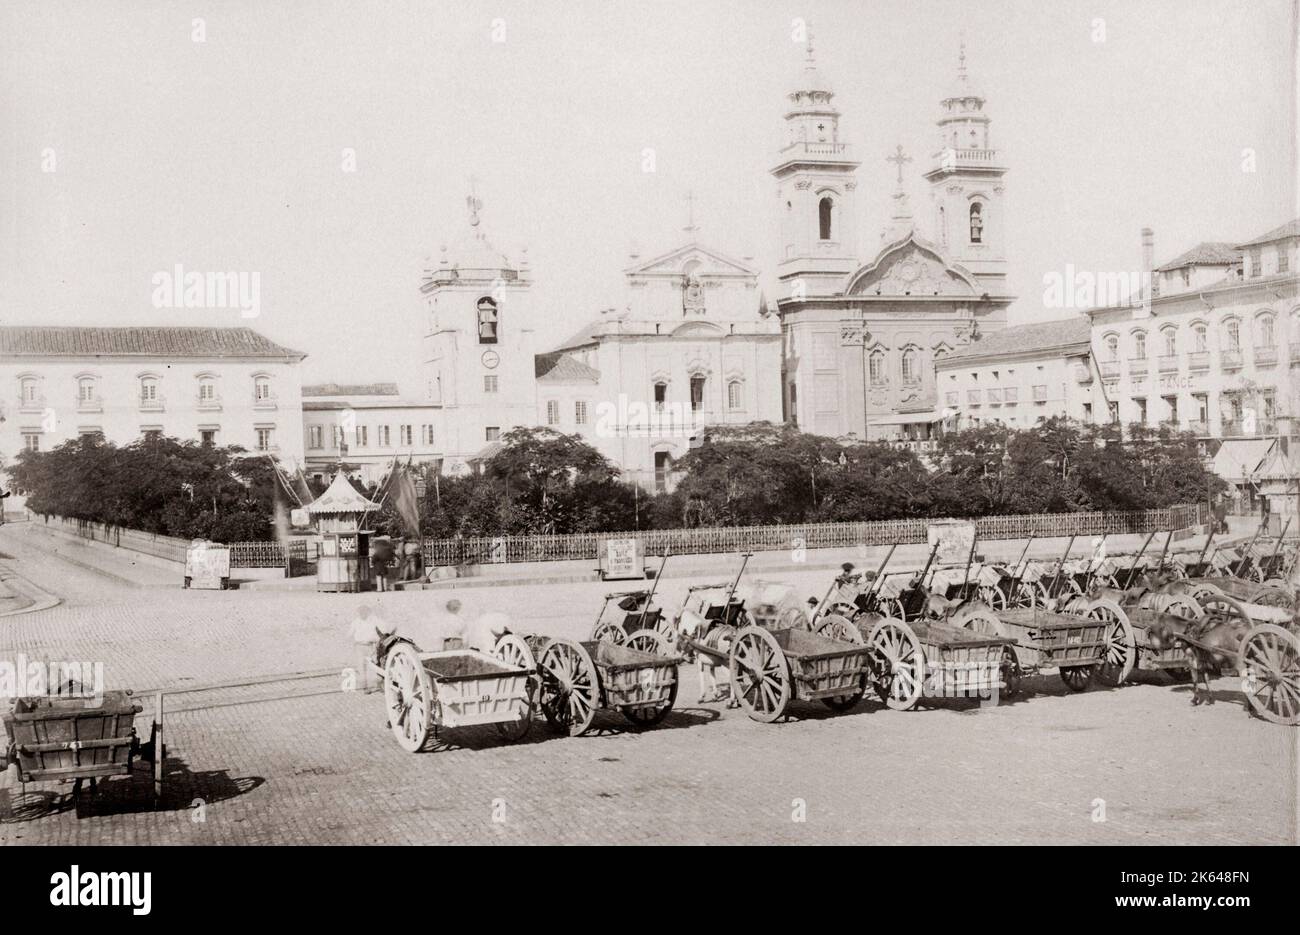 15 novembre Square, Rio de Janeiro, Brésil c.1890 l'image présente sur la place des charrettes, qui est au cœur du quartier historique de la ville. Banque D'Images